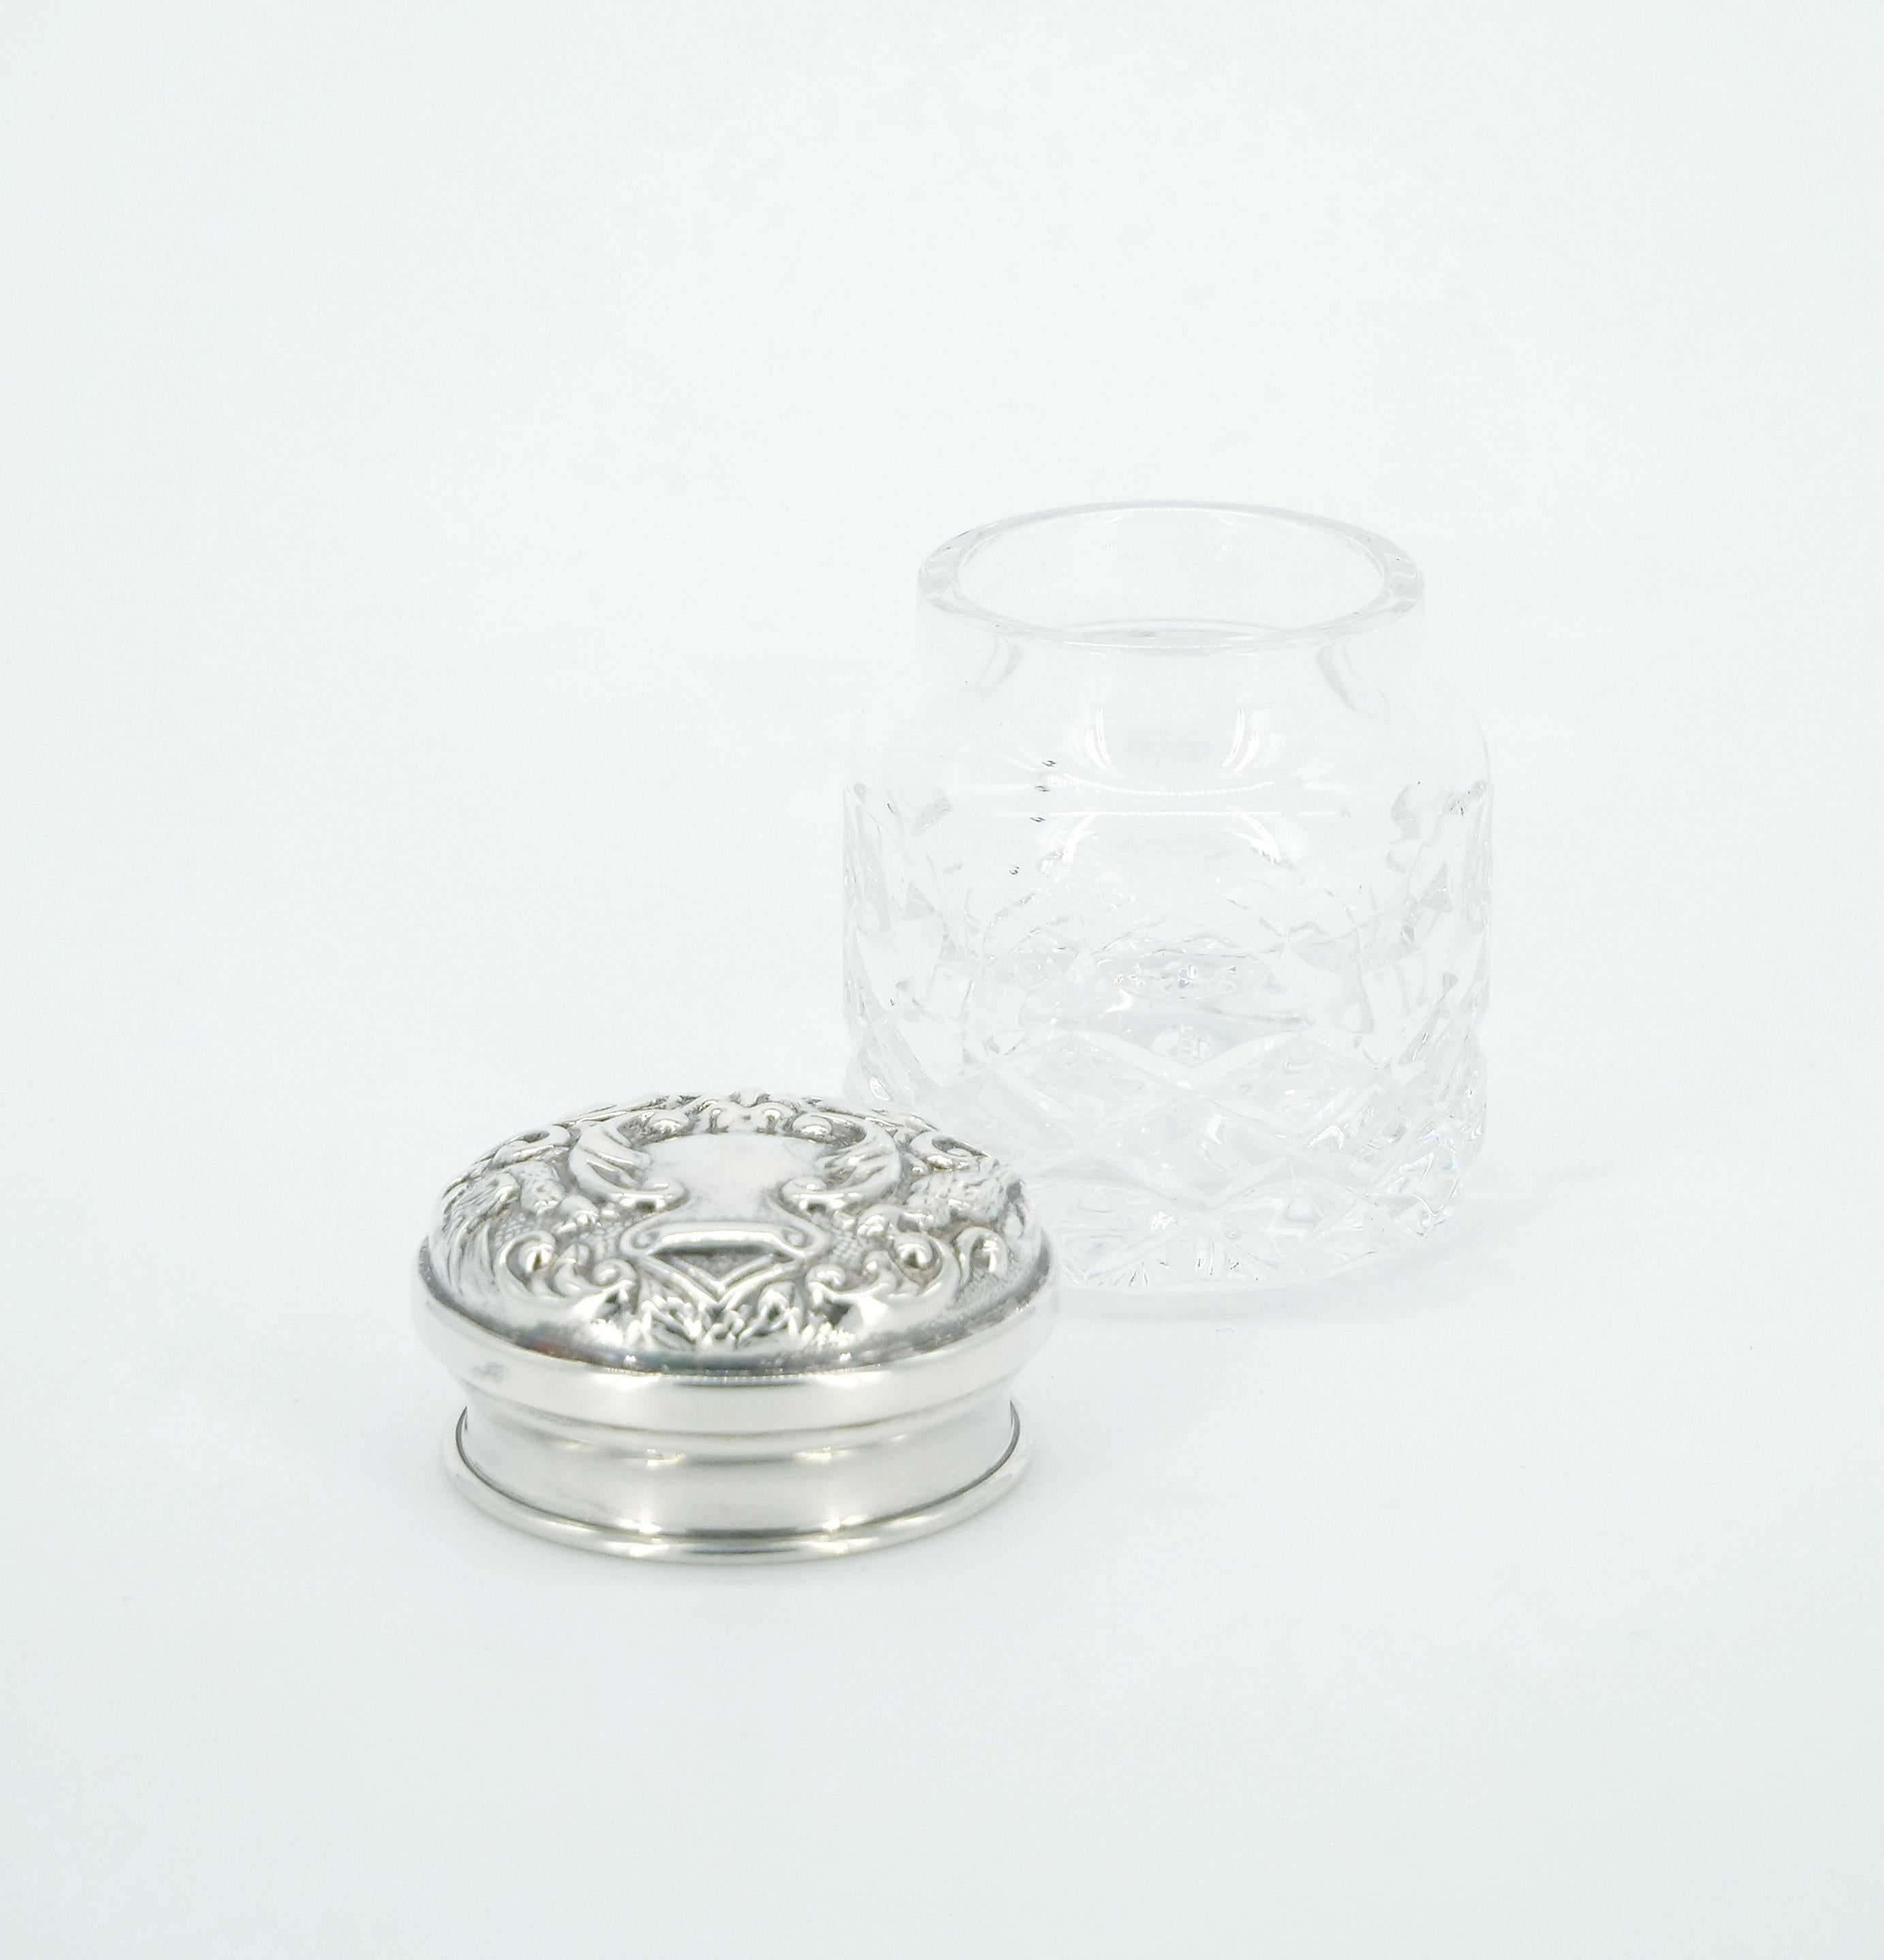 Tauchen Sie Ihren Raum in den Charme des 19. Jahrhunderts mit dieser exquisiten englischen Sterling Silber Deckel und geschliffenem Glas abgedeckt Stück. Dieses bedeckte Gefäß ist ein Zeugnis für die Kunstfertigkeit seiner Zeit. Der Deckel ist aus